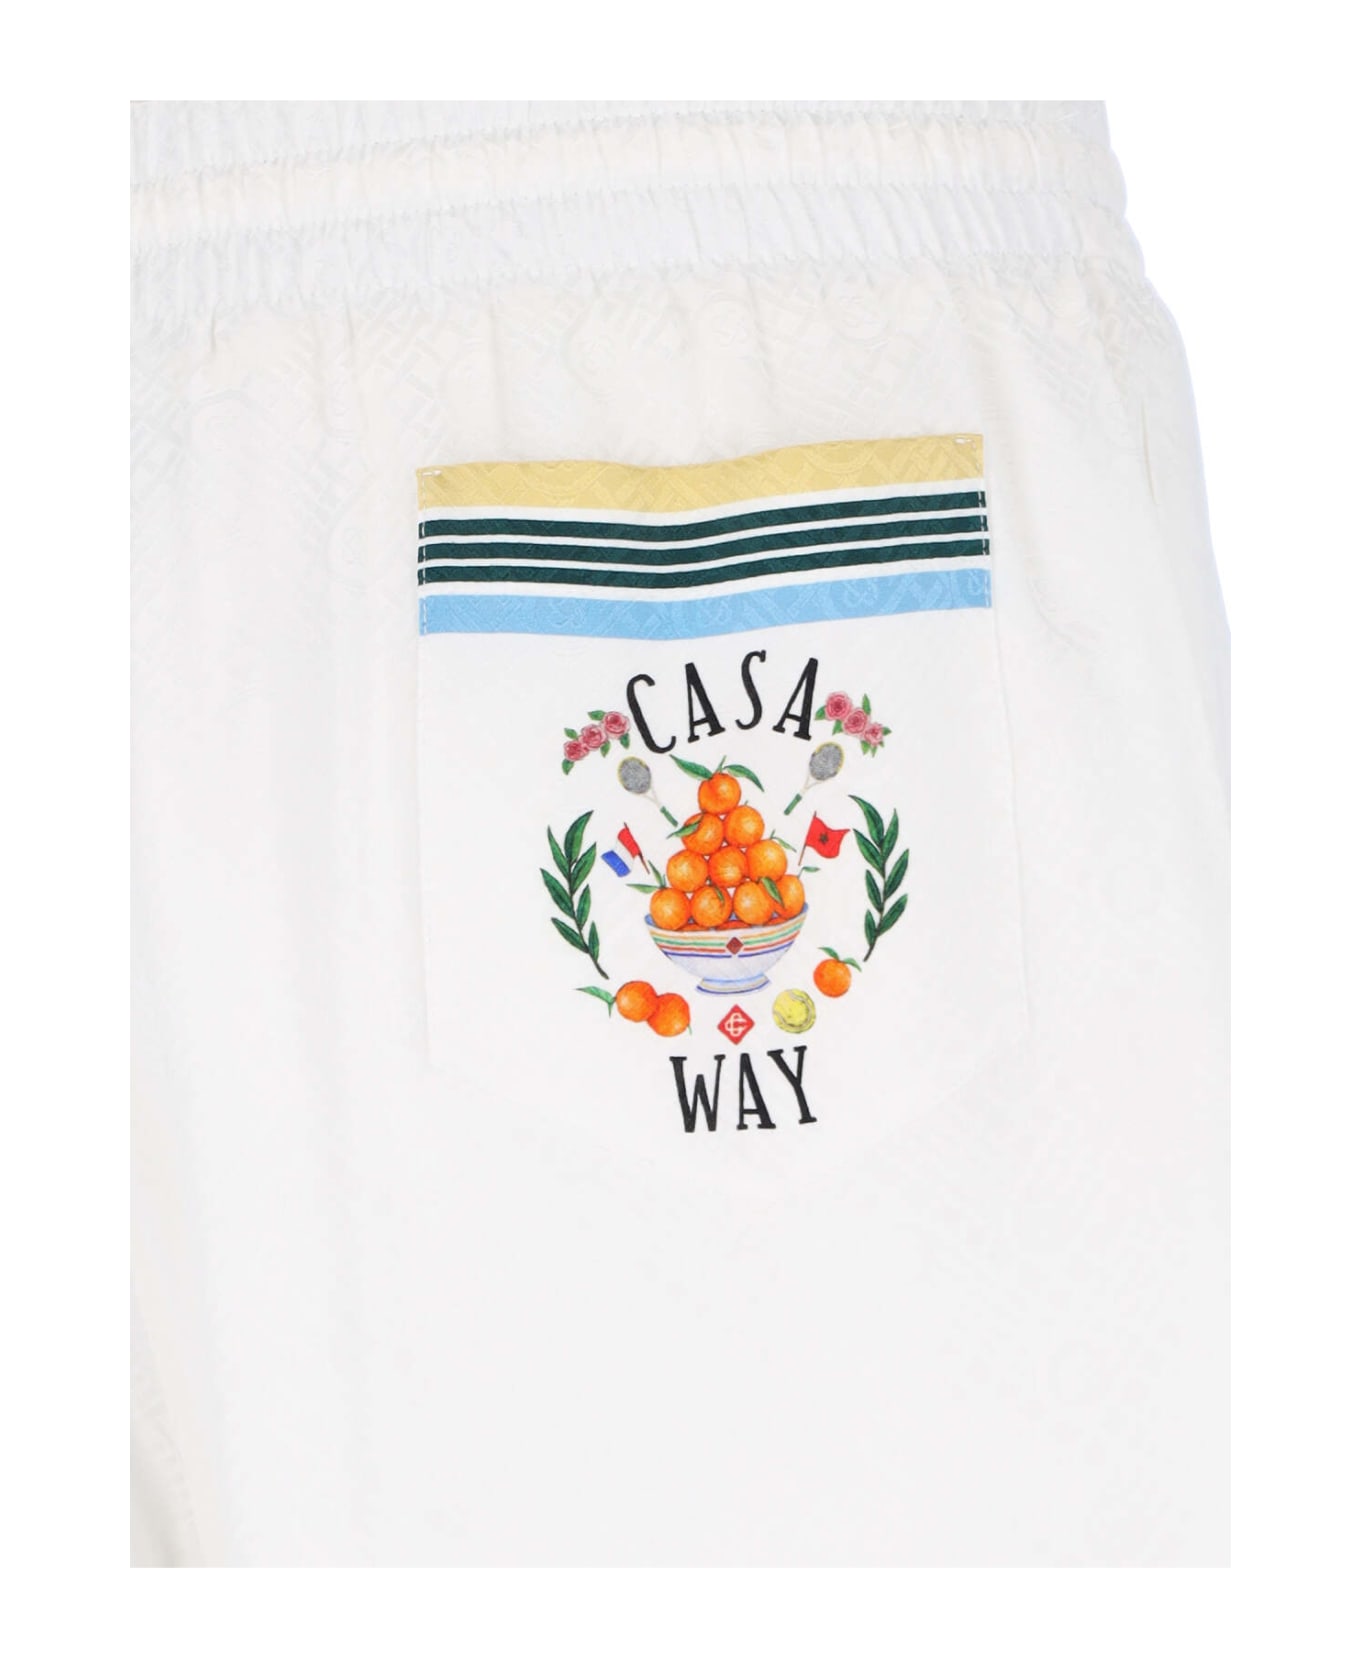 Casablanca 'casa Way' Shorts - White